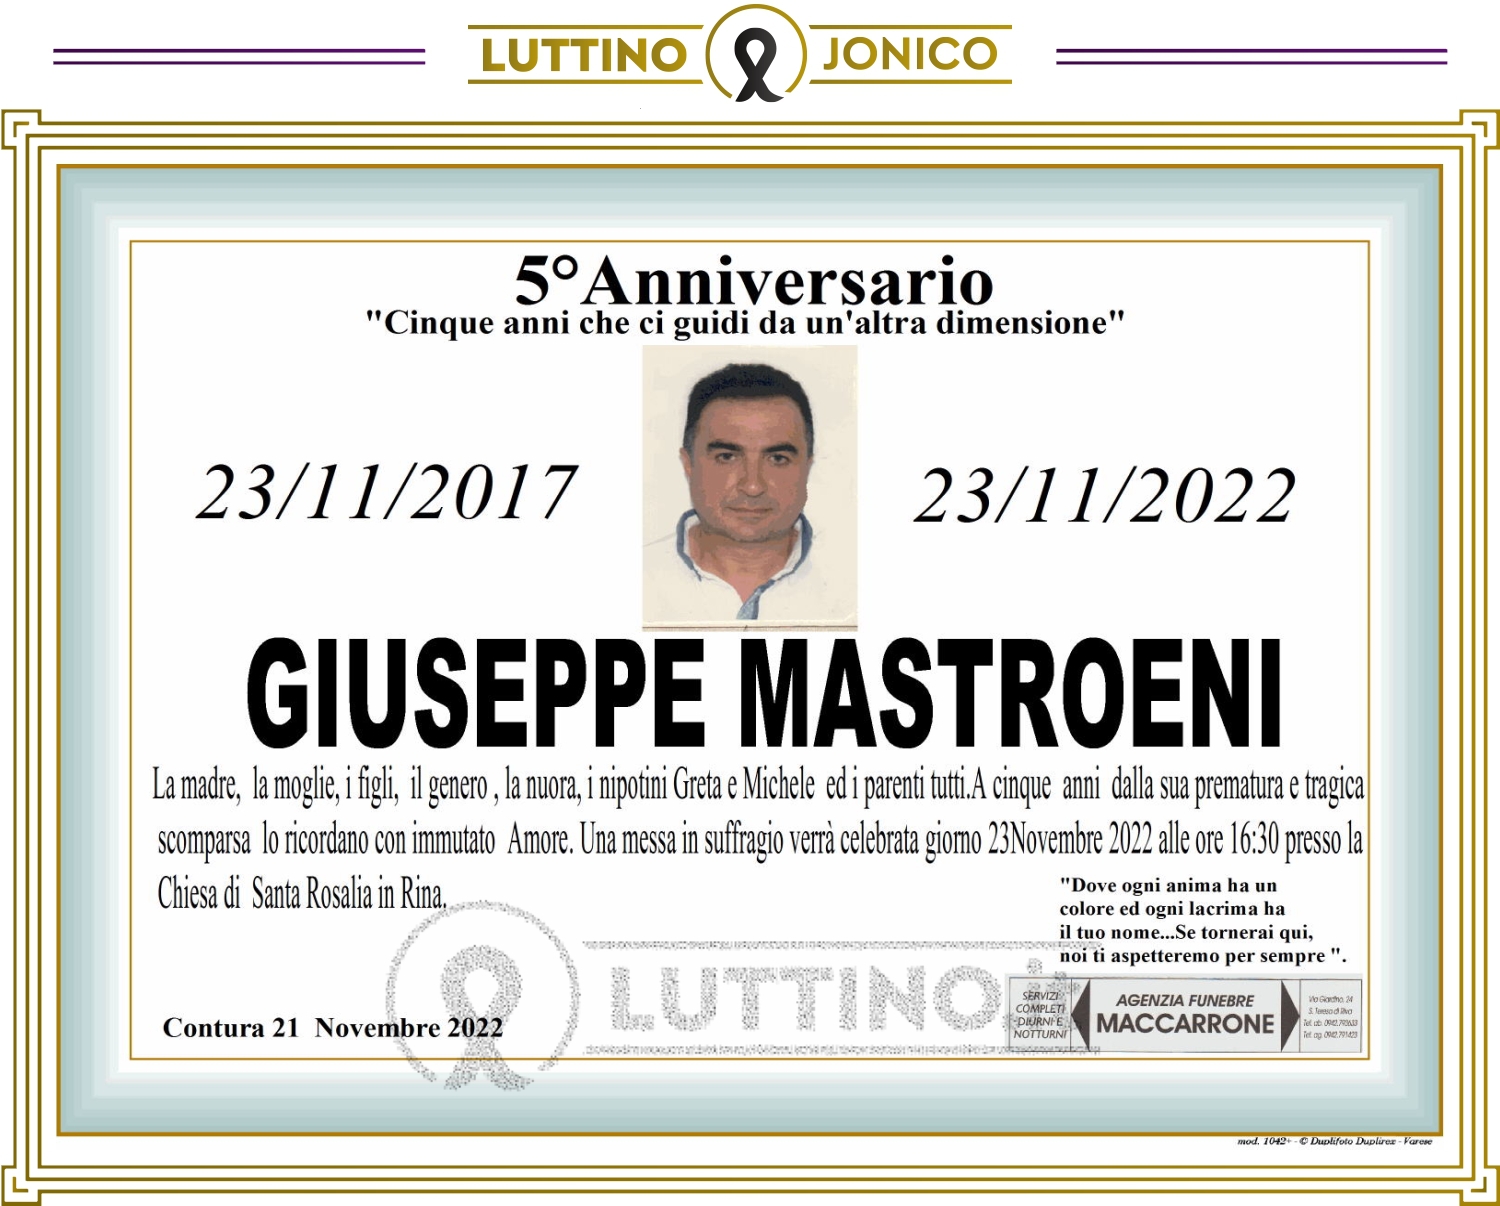 Giuseppe Mastroeni